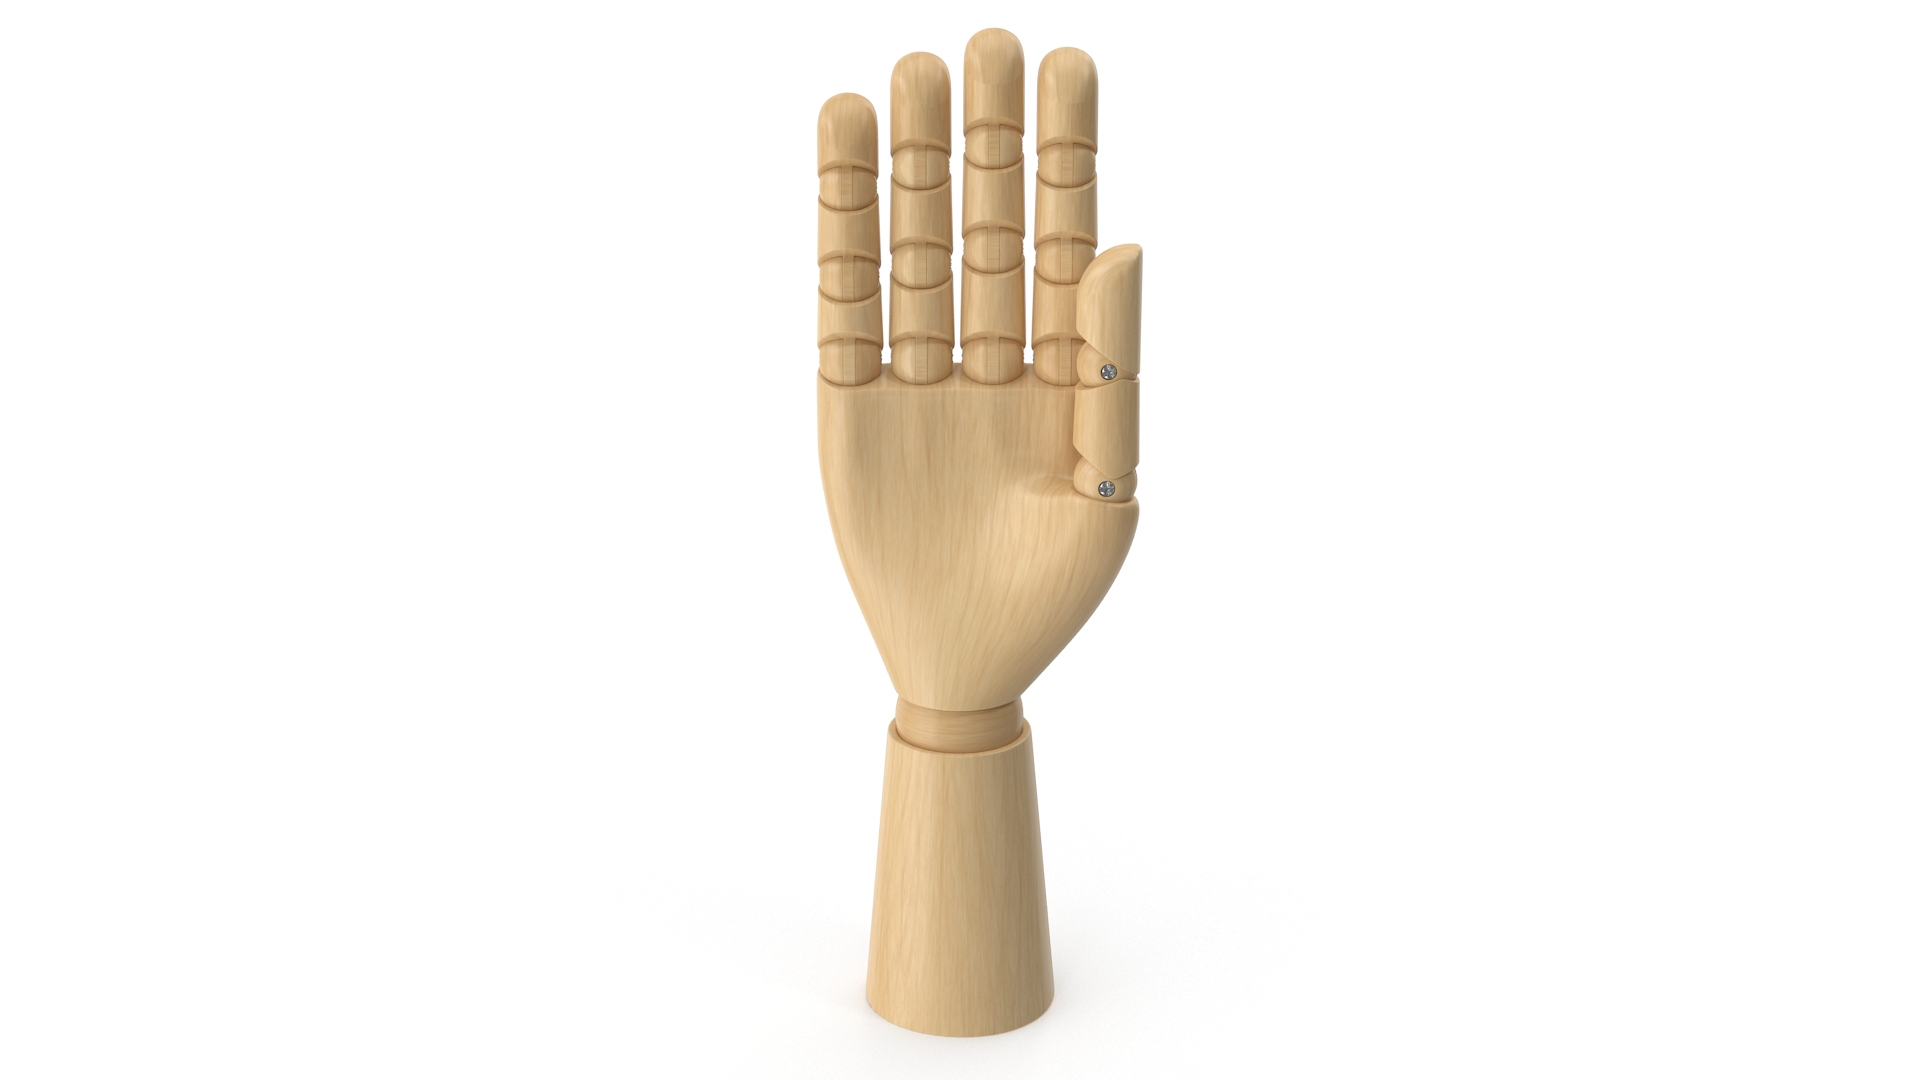 3D model wooden hand - TurboSquid 1657081